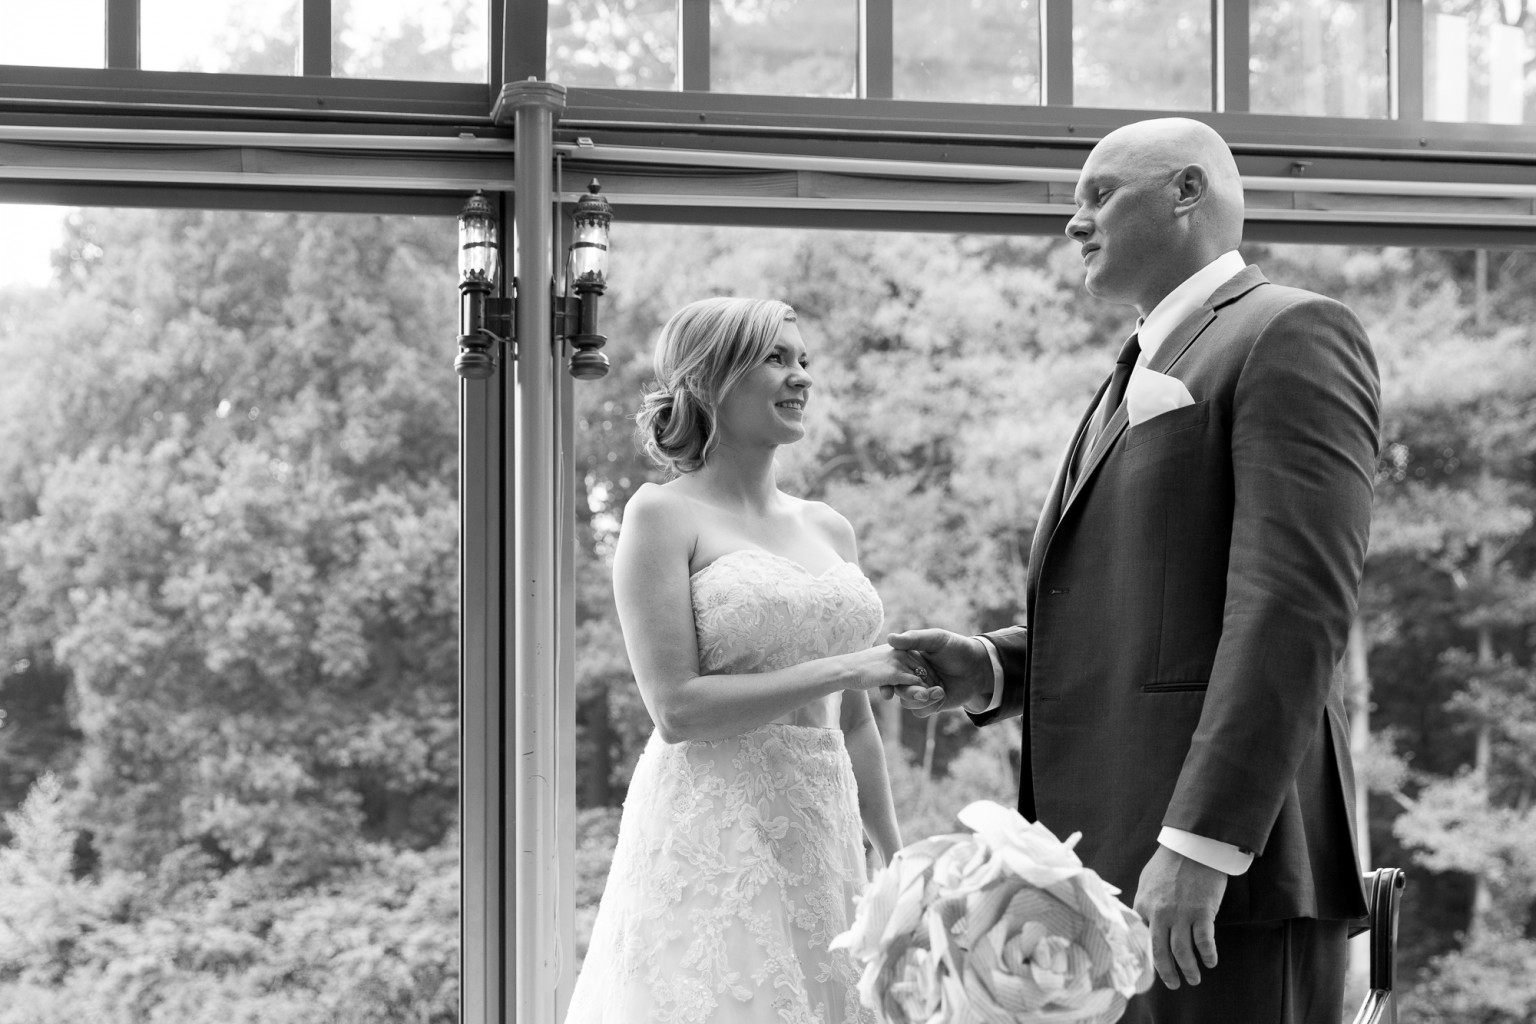 I Do - Bruidsfotograaf Peter Lammers bij Kasteel Engelenburg - bruidspaar zegt ja!